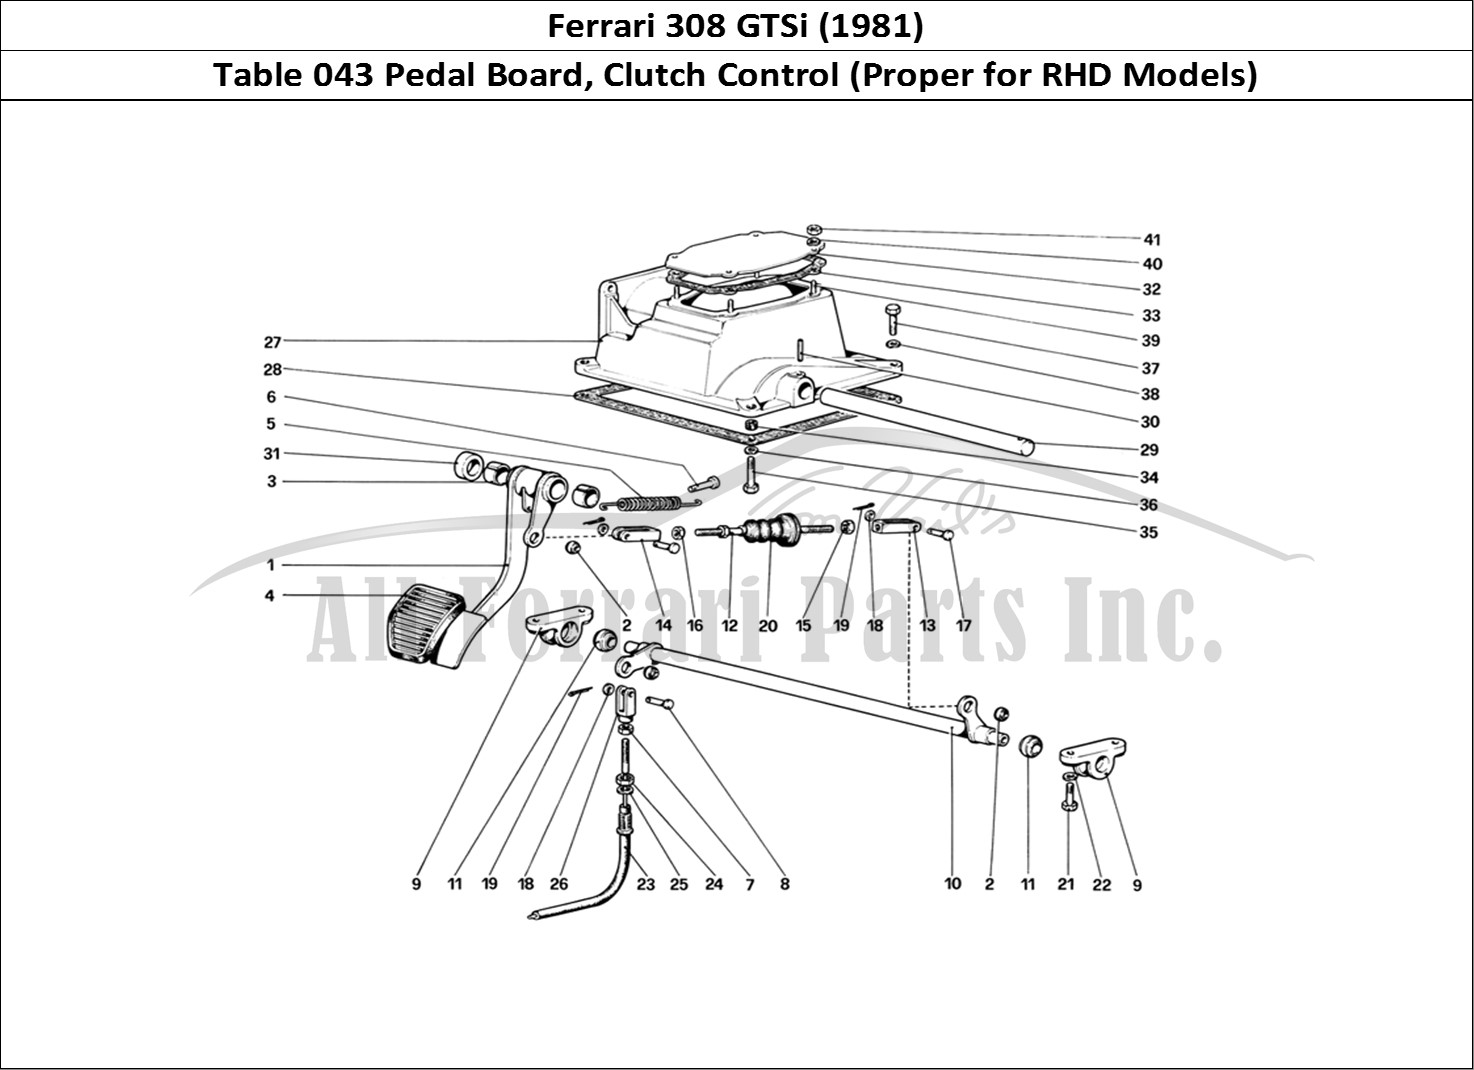 Ferrari Parts Ferrari 308 GTBi (1981) Page 043 Pedal Board - Clutch Cont